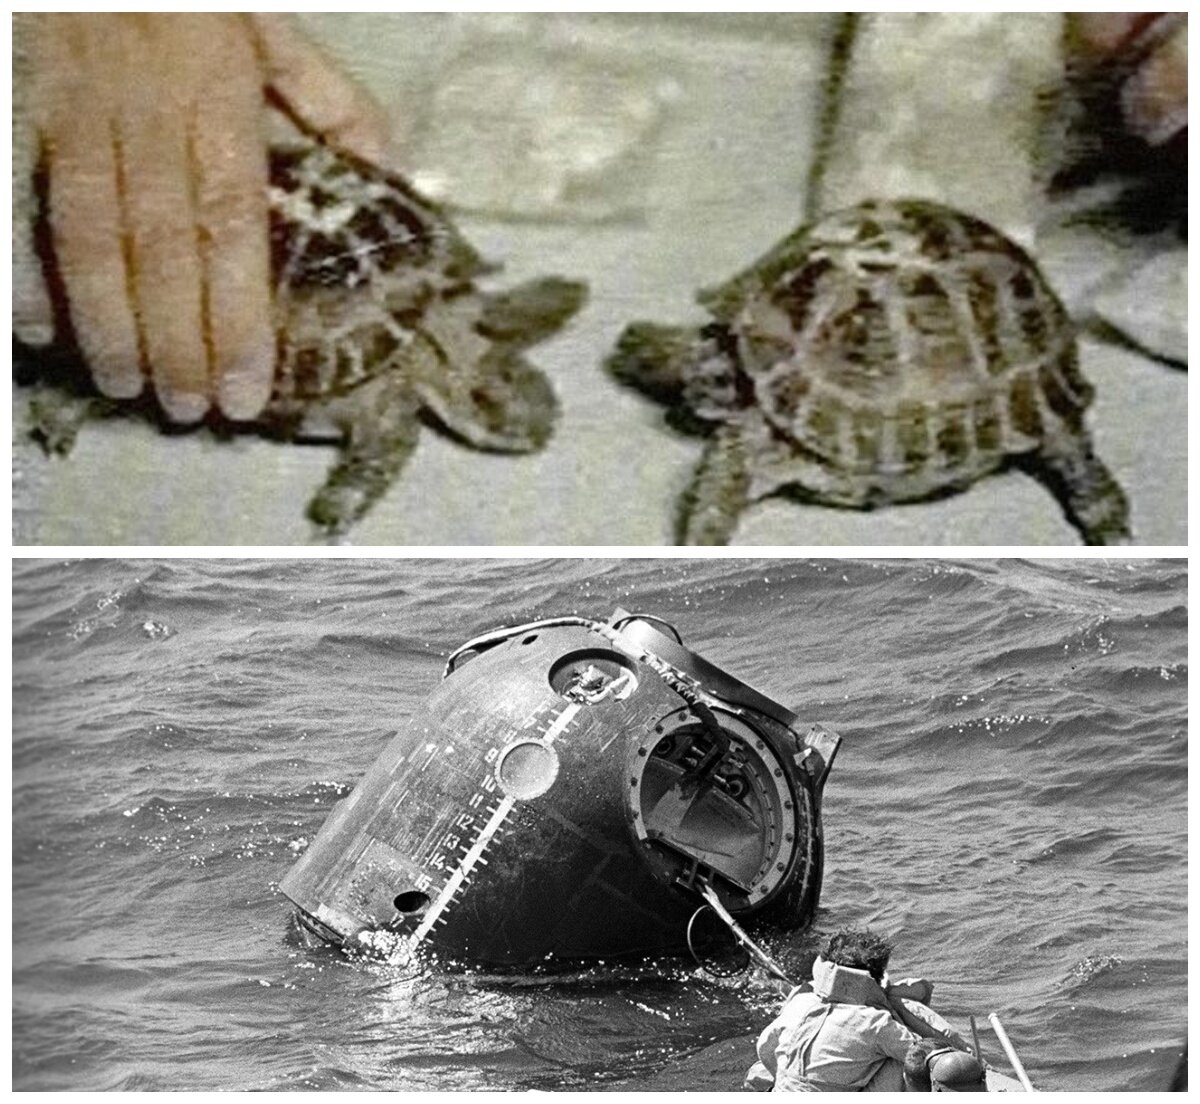 Какое животное облетело вокруг луны. Зонд 5 черепахи в космосе. Первыми облетели вокруг Луны черепахи. Среднеазиатские черепахи в космосе. Черепахи облетевшие луну.